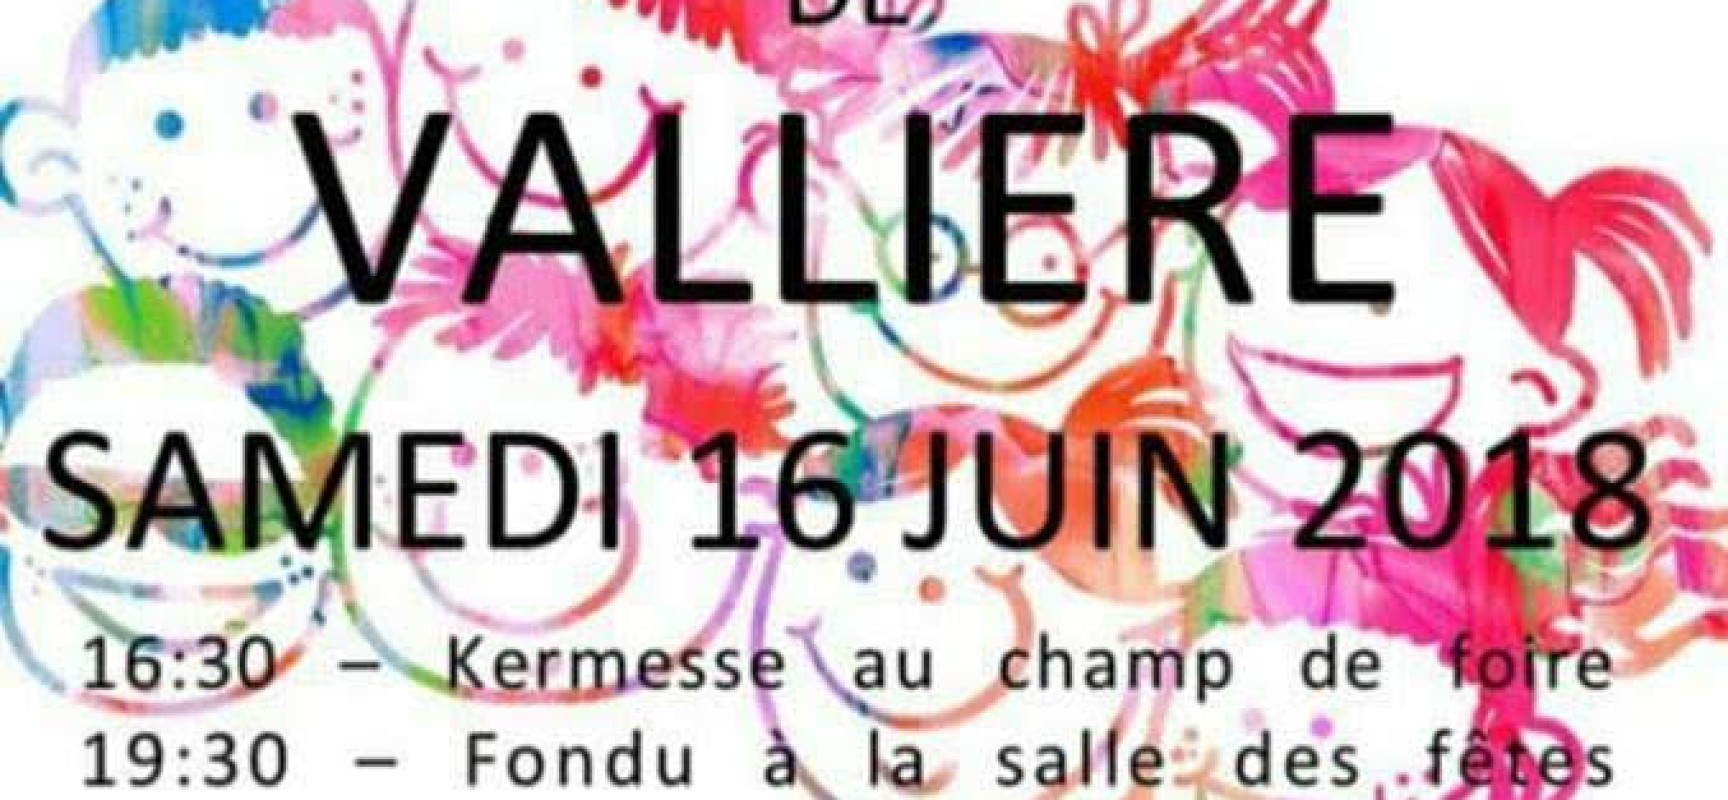 Fondu-Frites / Kermesse de l’école de #Vallière